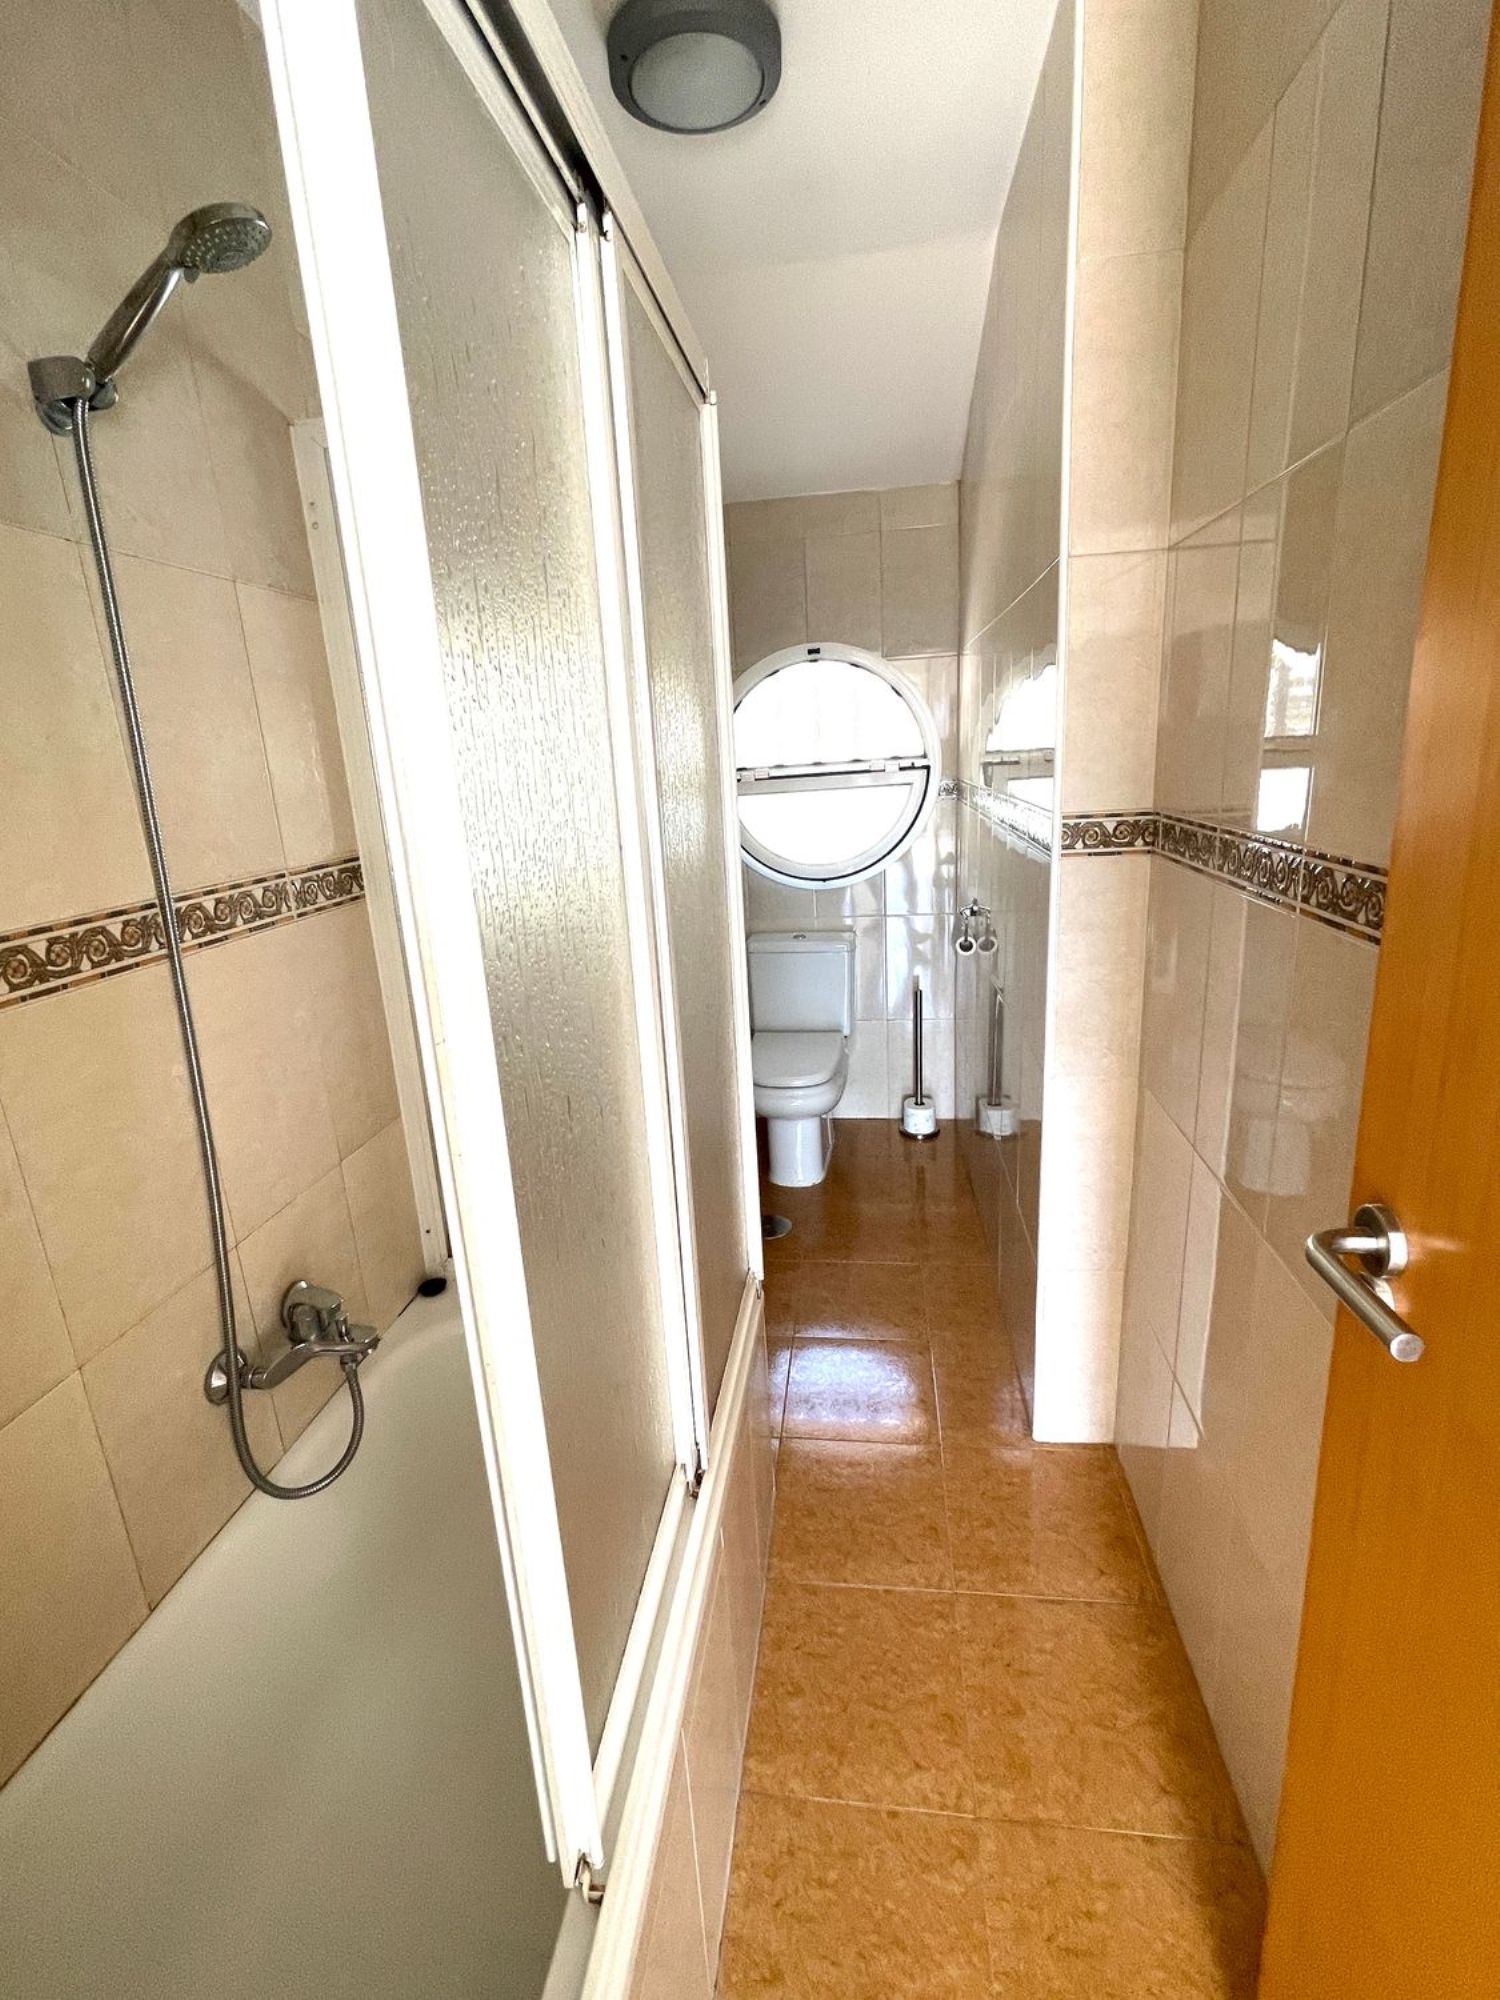 Área de Albuñol, Granada, 3 Bedrooms Bedrooms, ,2 BathroomsBathrooms,House,For Sale